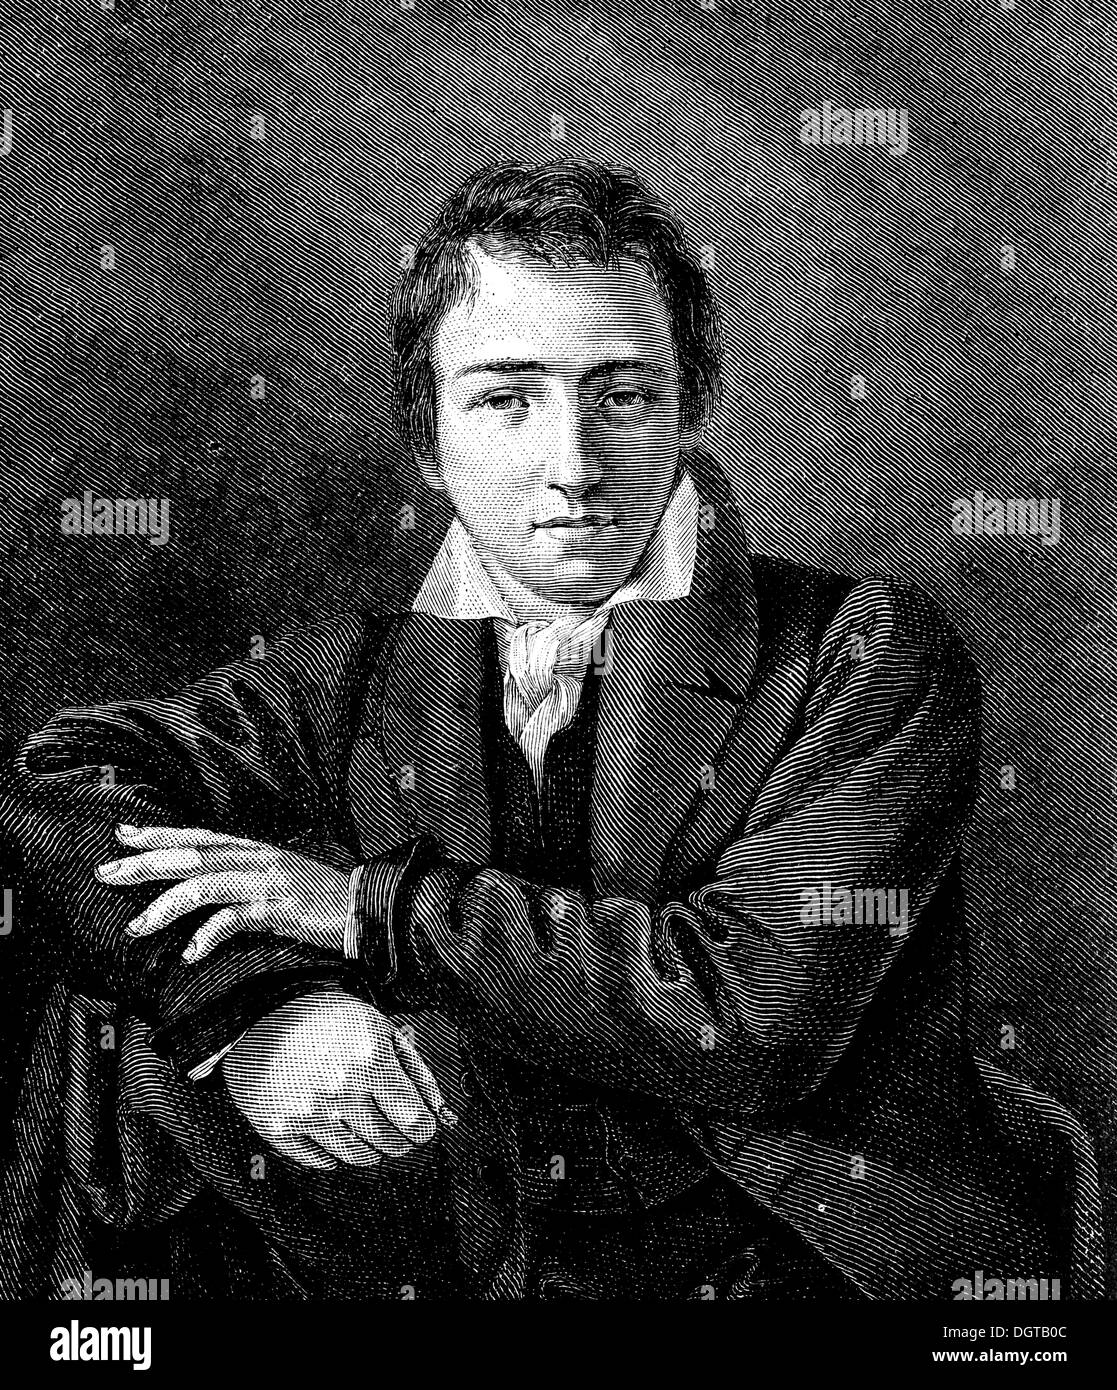 Porträt des jungen Heinrich Heine, Gemälde von Moritz Oppenheim, historische Darstellung aus der Geschichte der deutschen Literatur aus dem Jahr 1885 Stockfoto